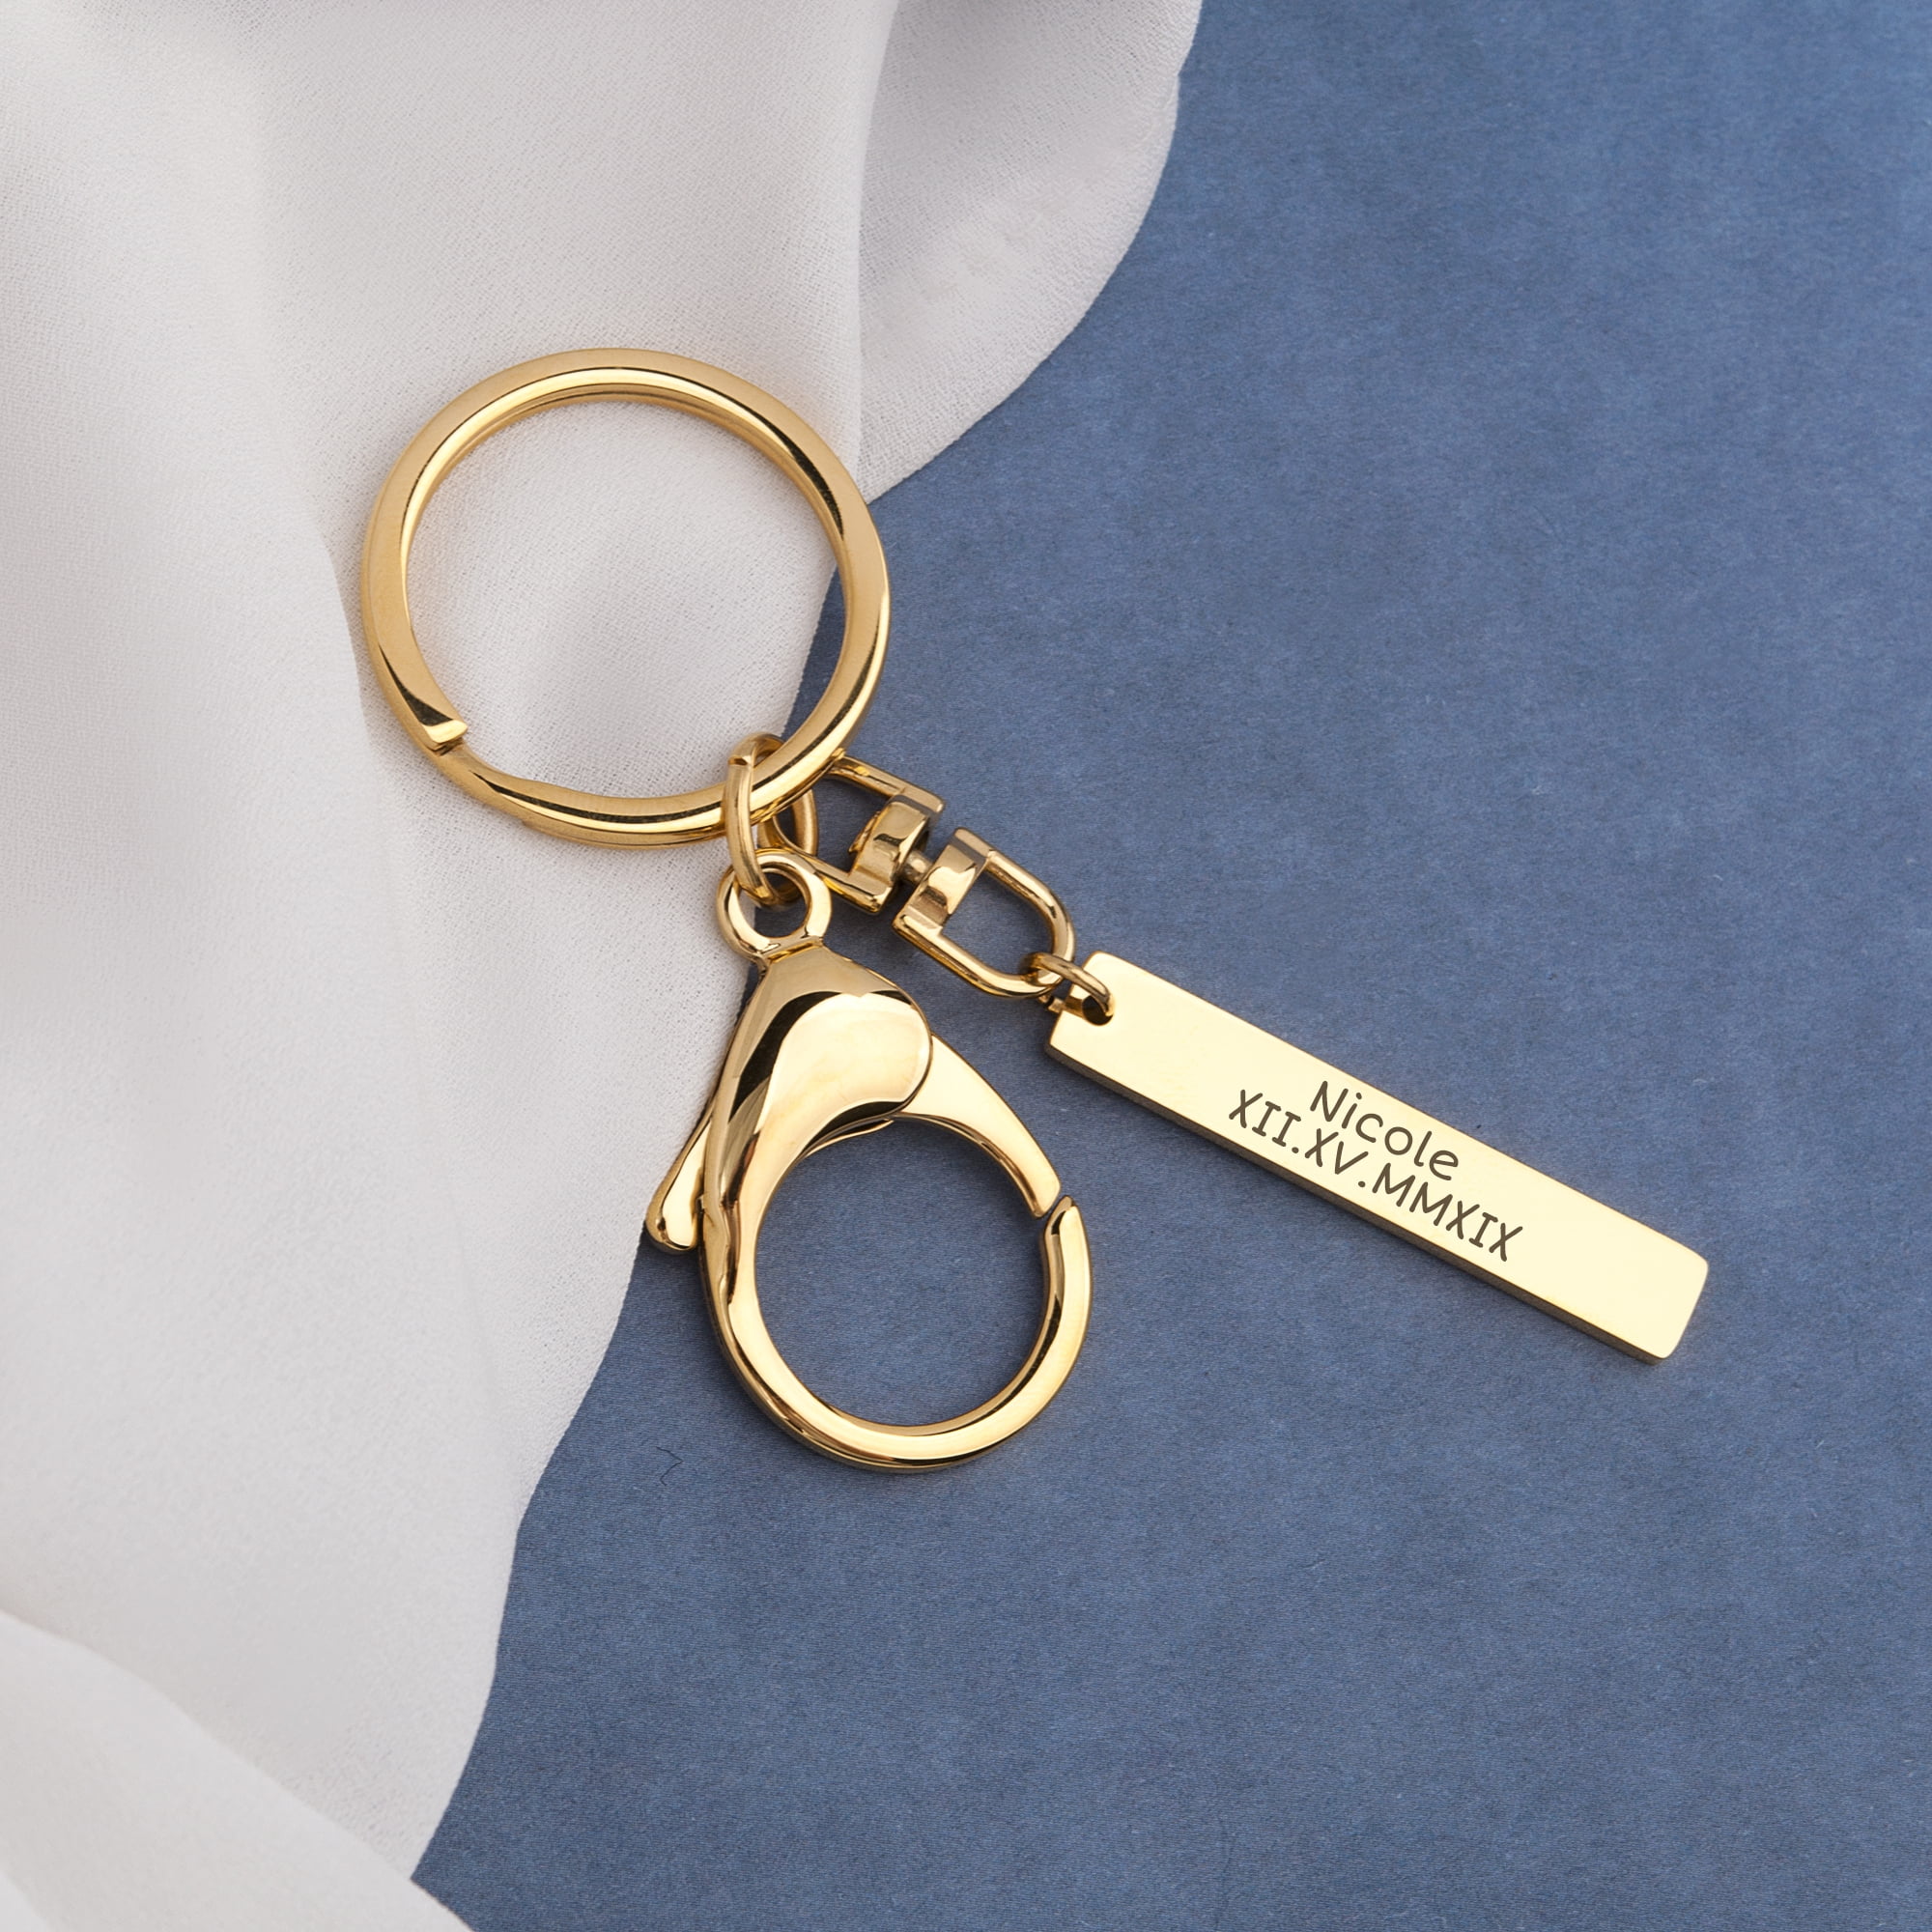 Louis Vuitton Bolt Key Holder - Gold Keychains, Accessories